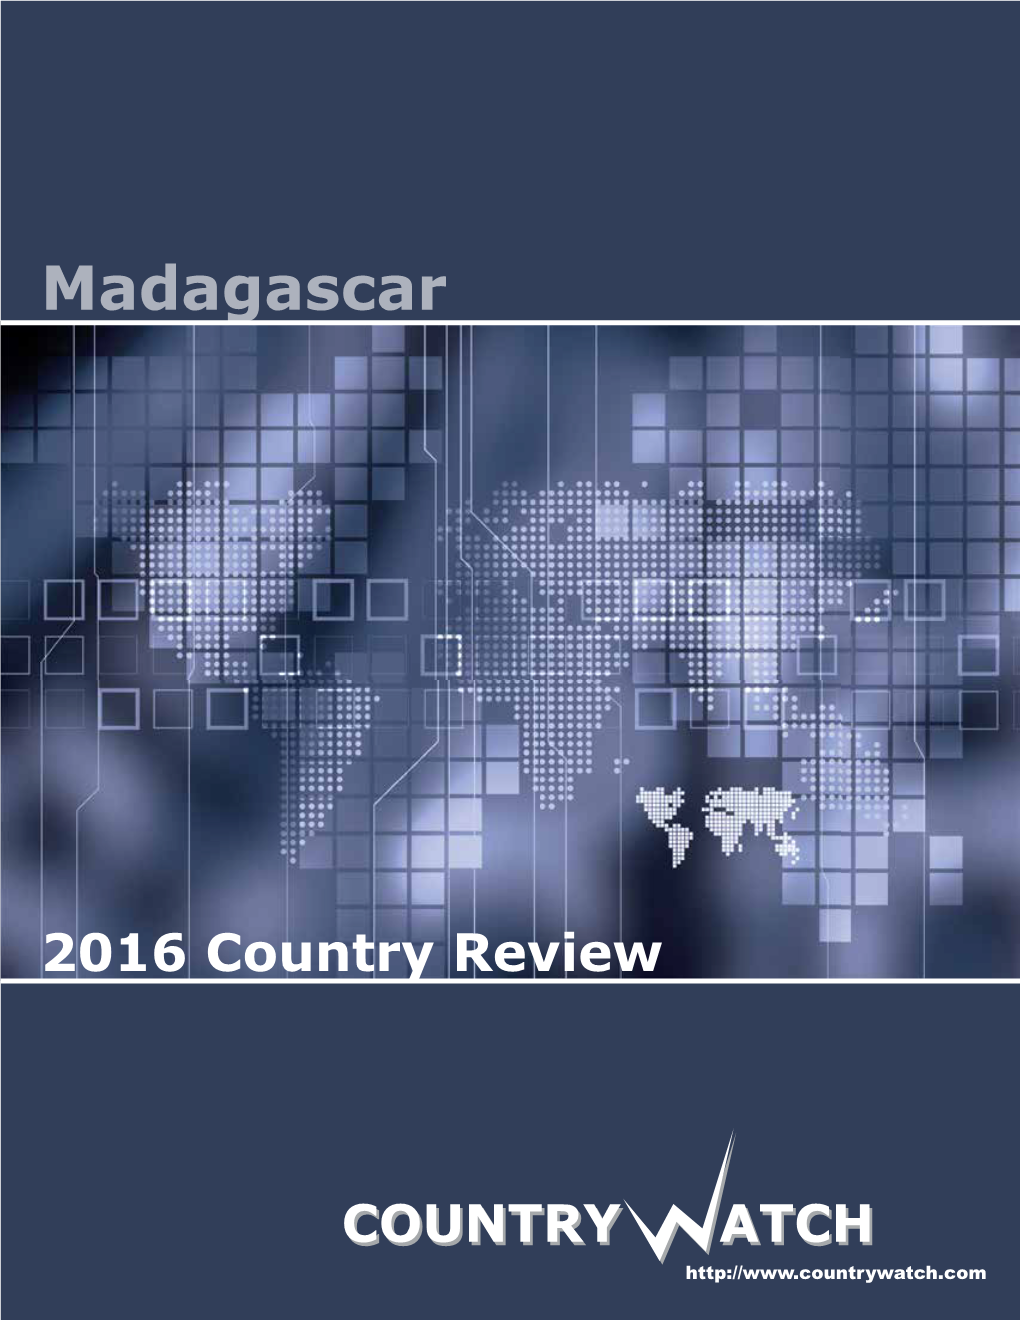 Madagascar 2016 Country Review